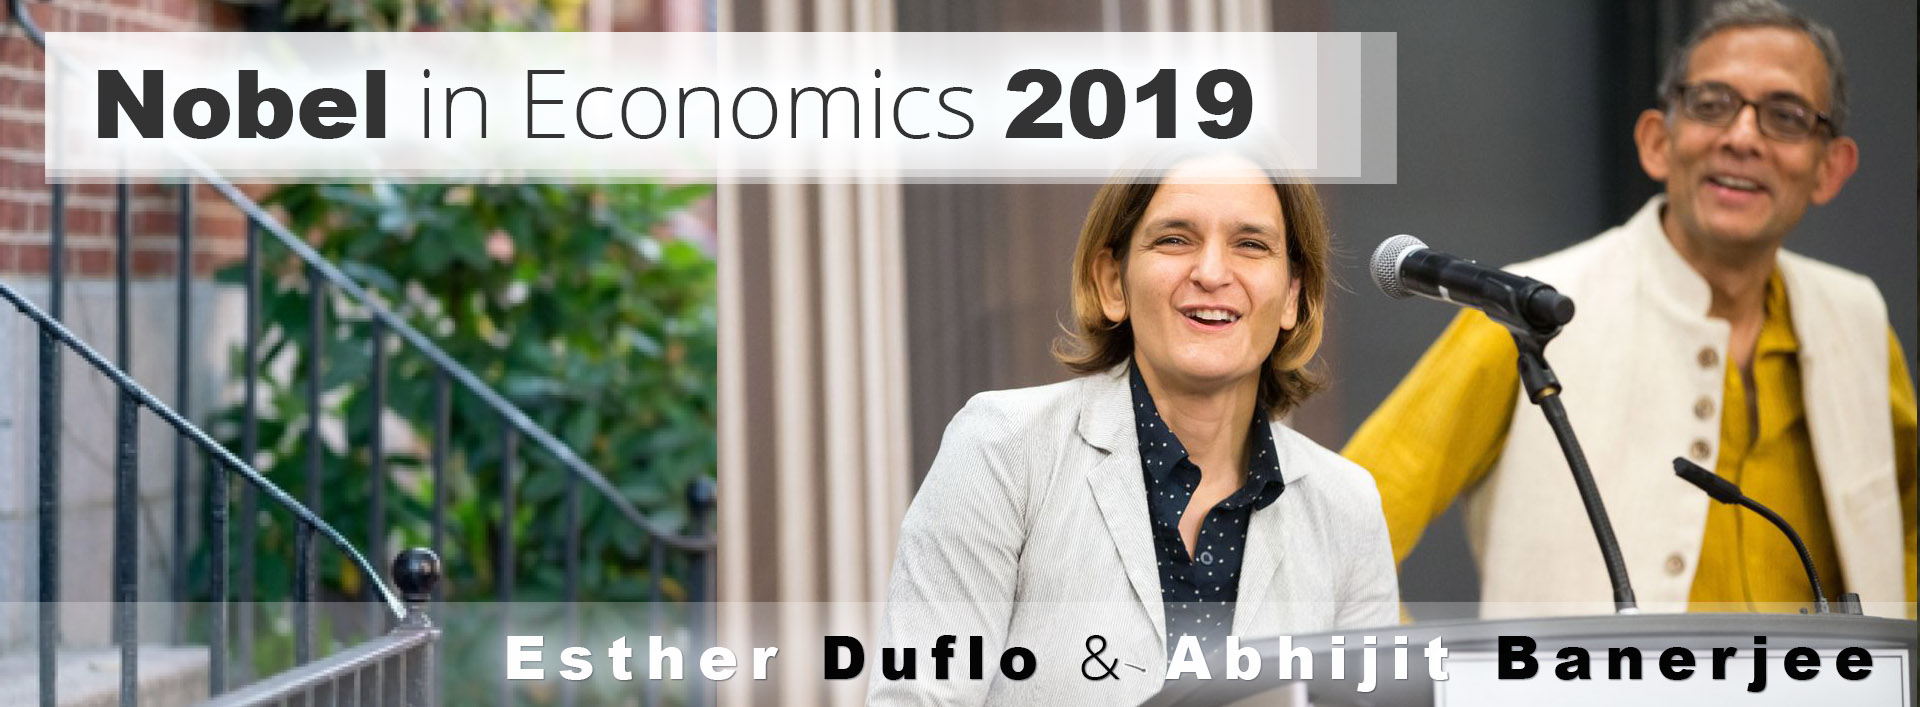 Poor-Economics__Esther-Duflo-and-Abhijit-Banerjee__Nobel-in-Economics